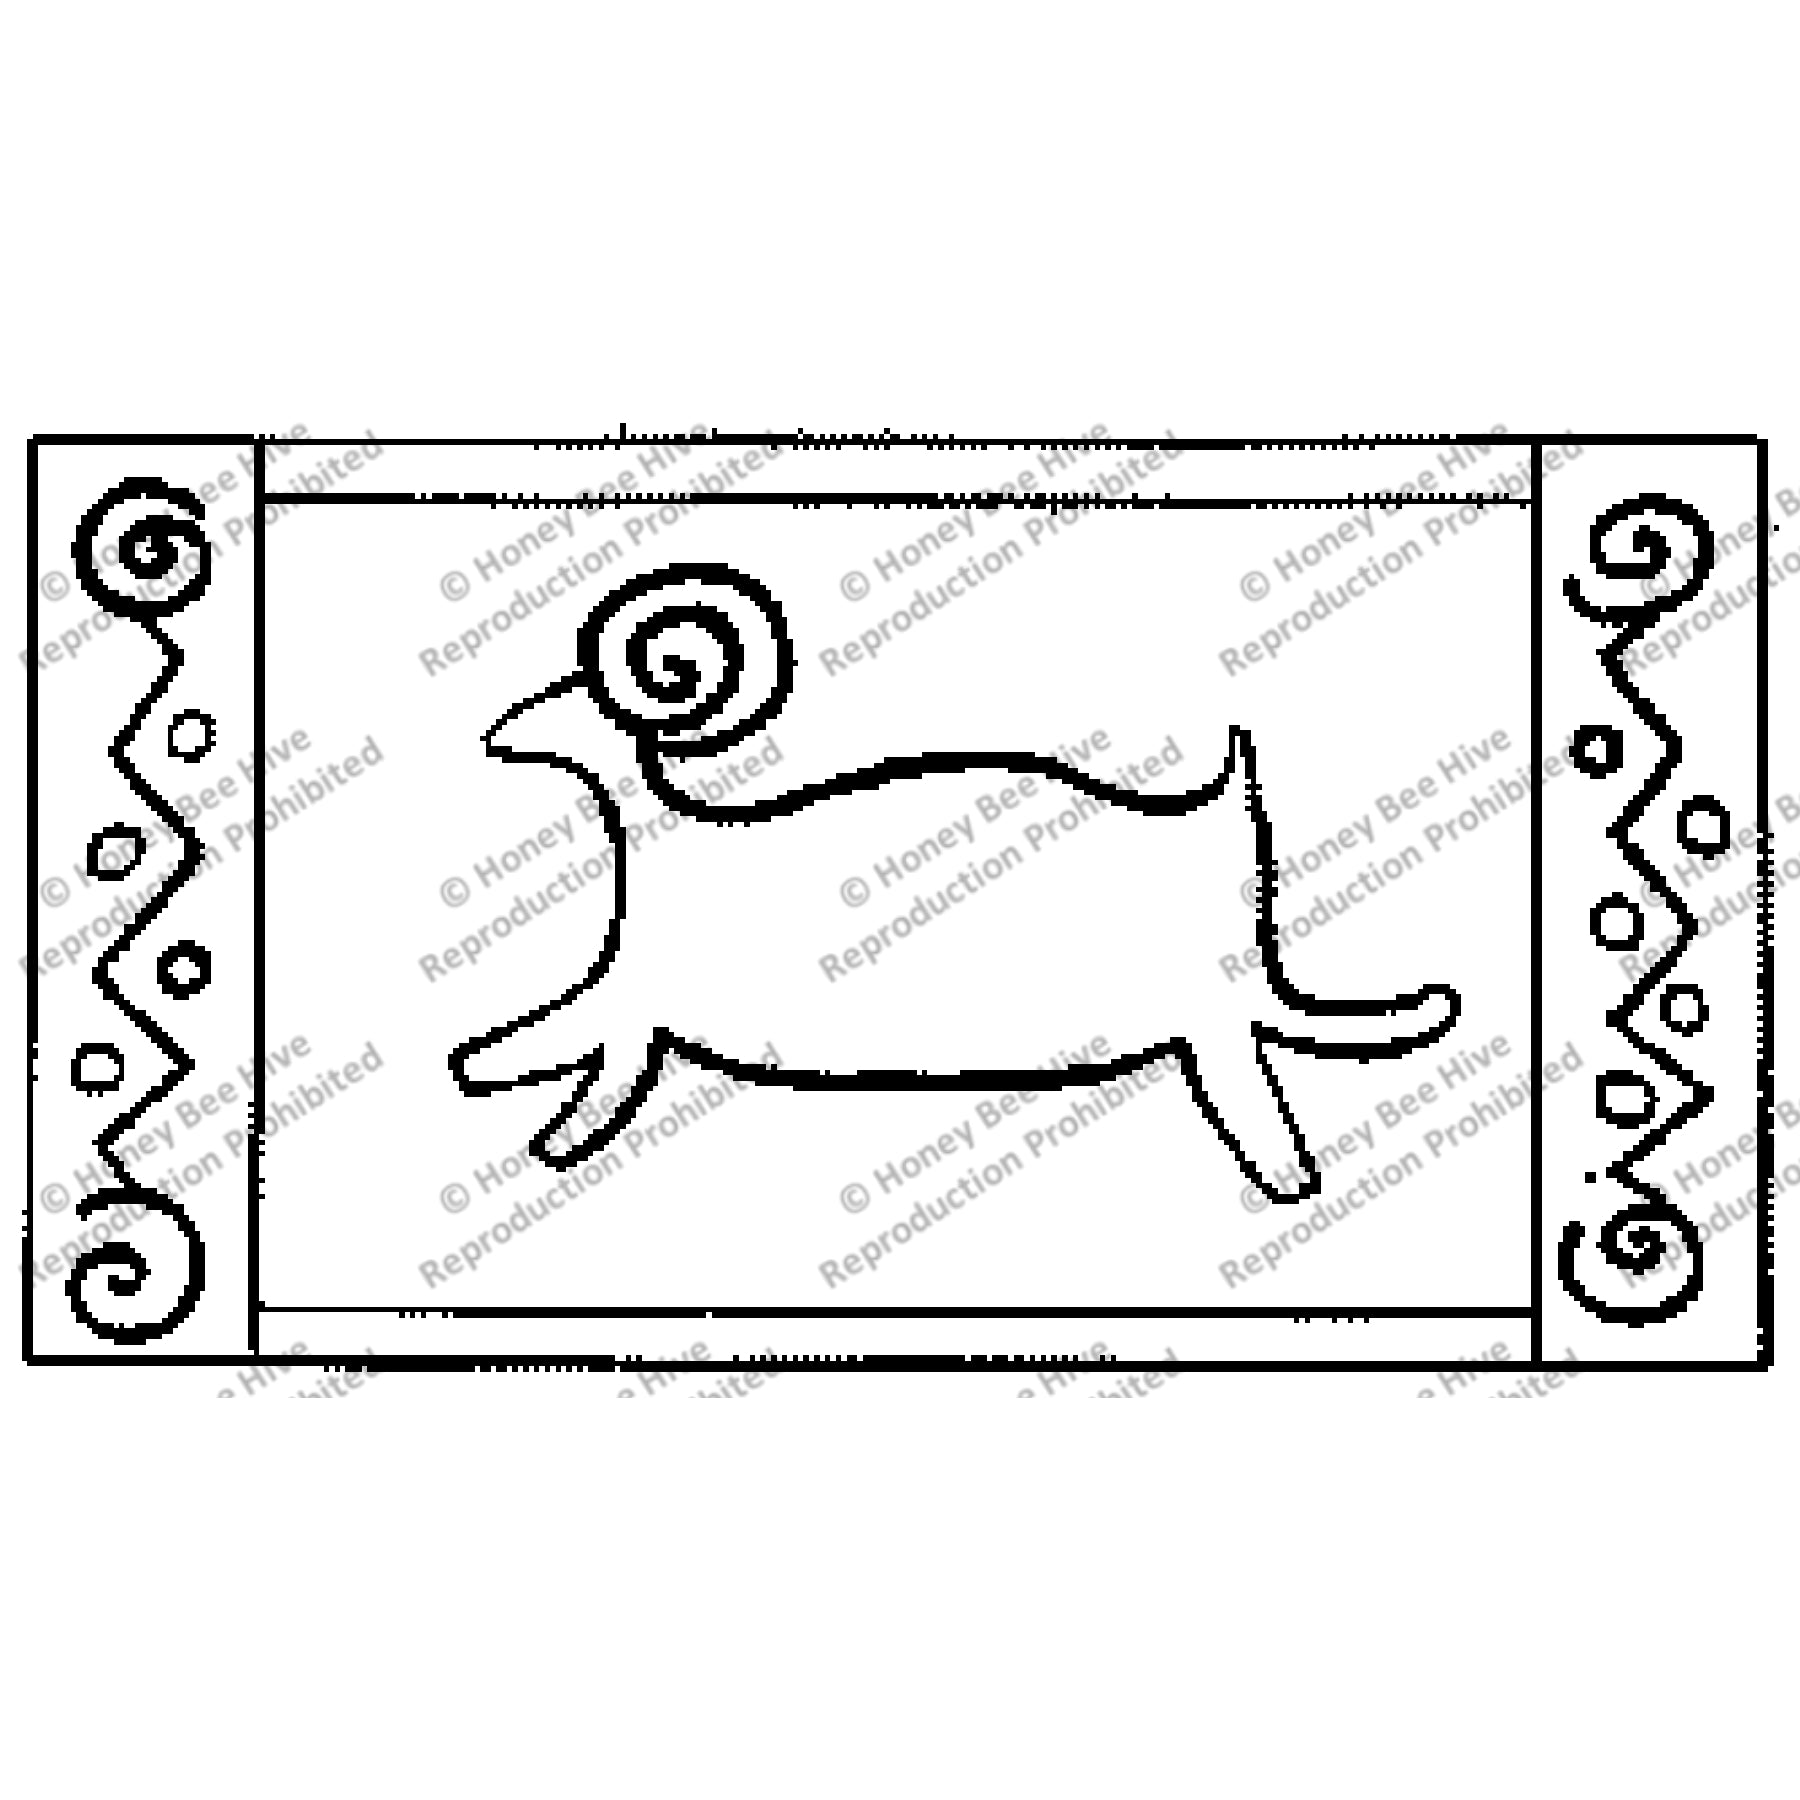 Cave Ram, rug hooking pattern